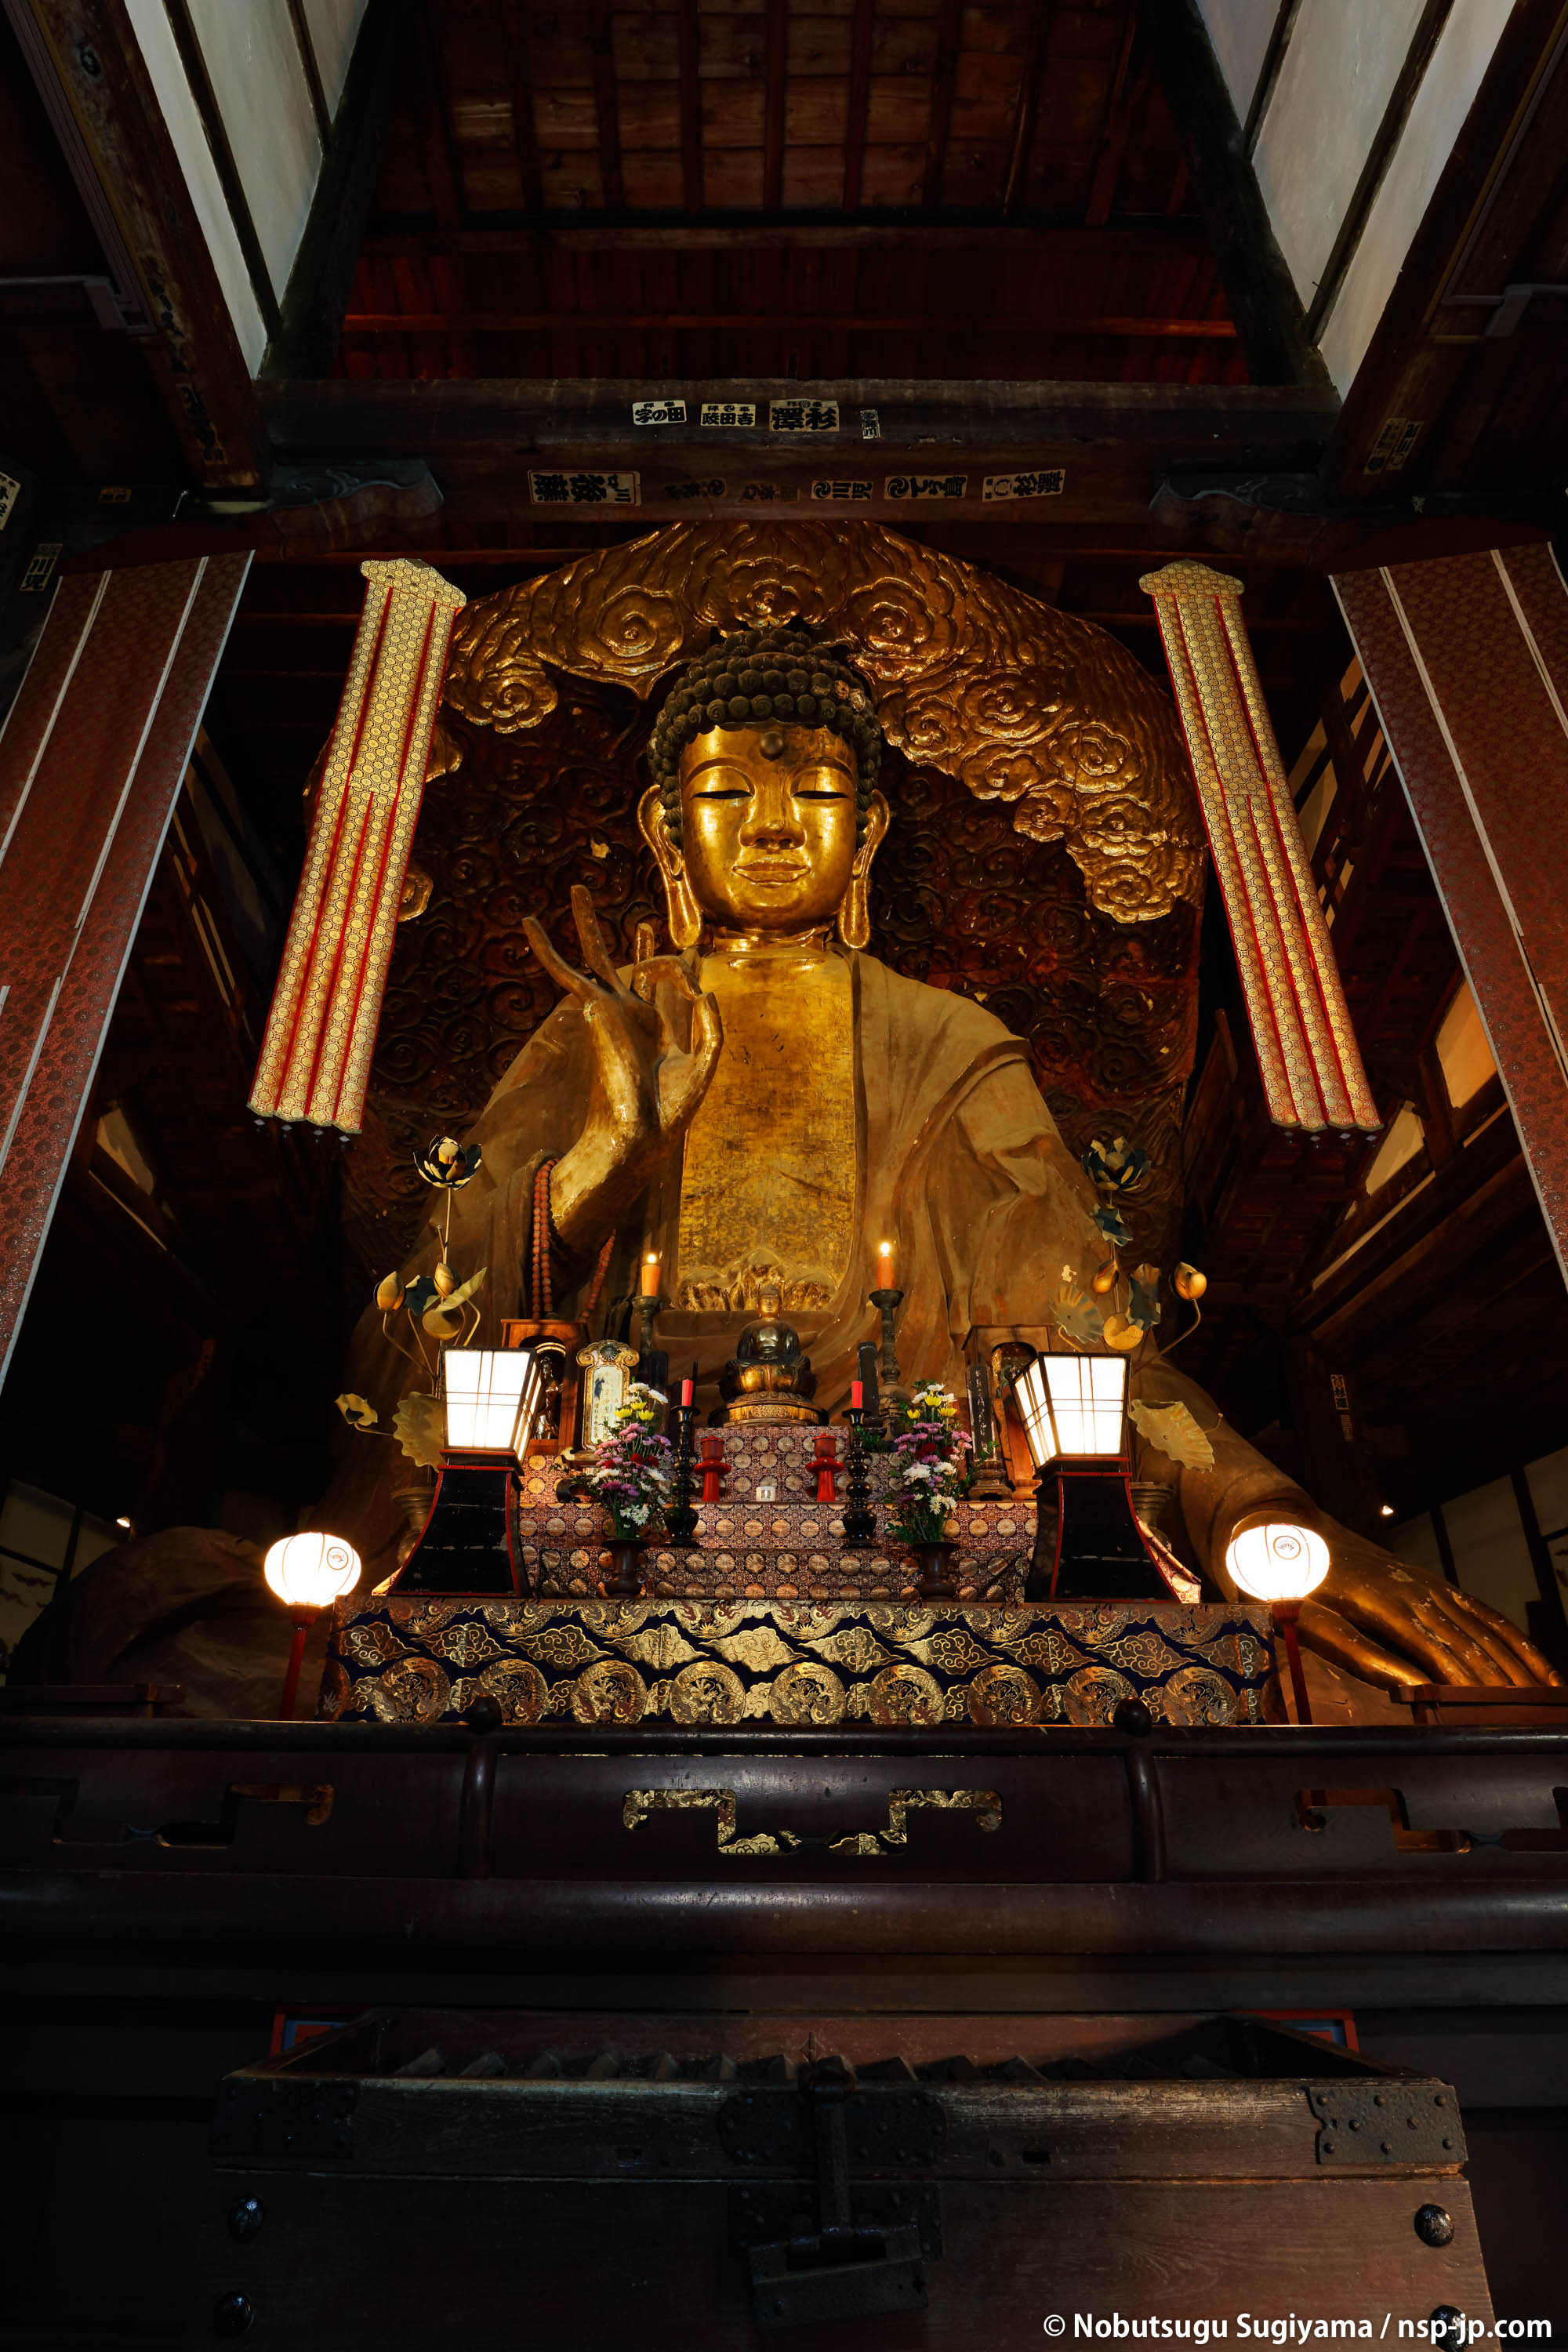 Gifu Grande Buddha(Temple Dhamma)-Big Buddha Tathagata come Shi | Gifu città natale pellegrinaggio da Sugiyama Sen 嗣 | 2017Oda Nobunaga pubblico Gifu Gifu in città prende il nome da 450 anni